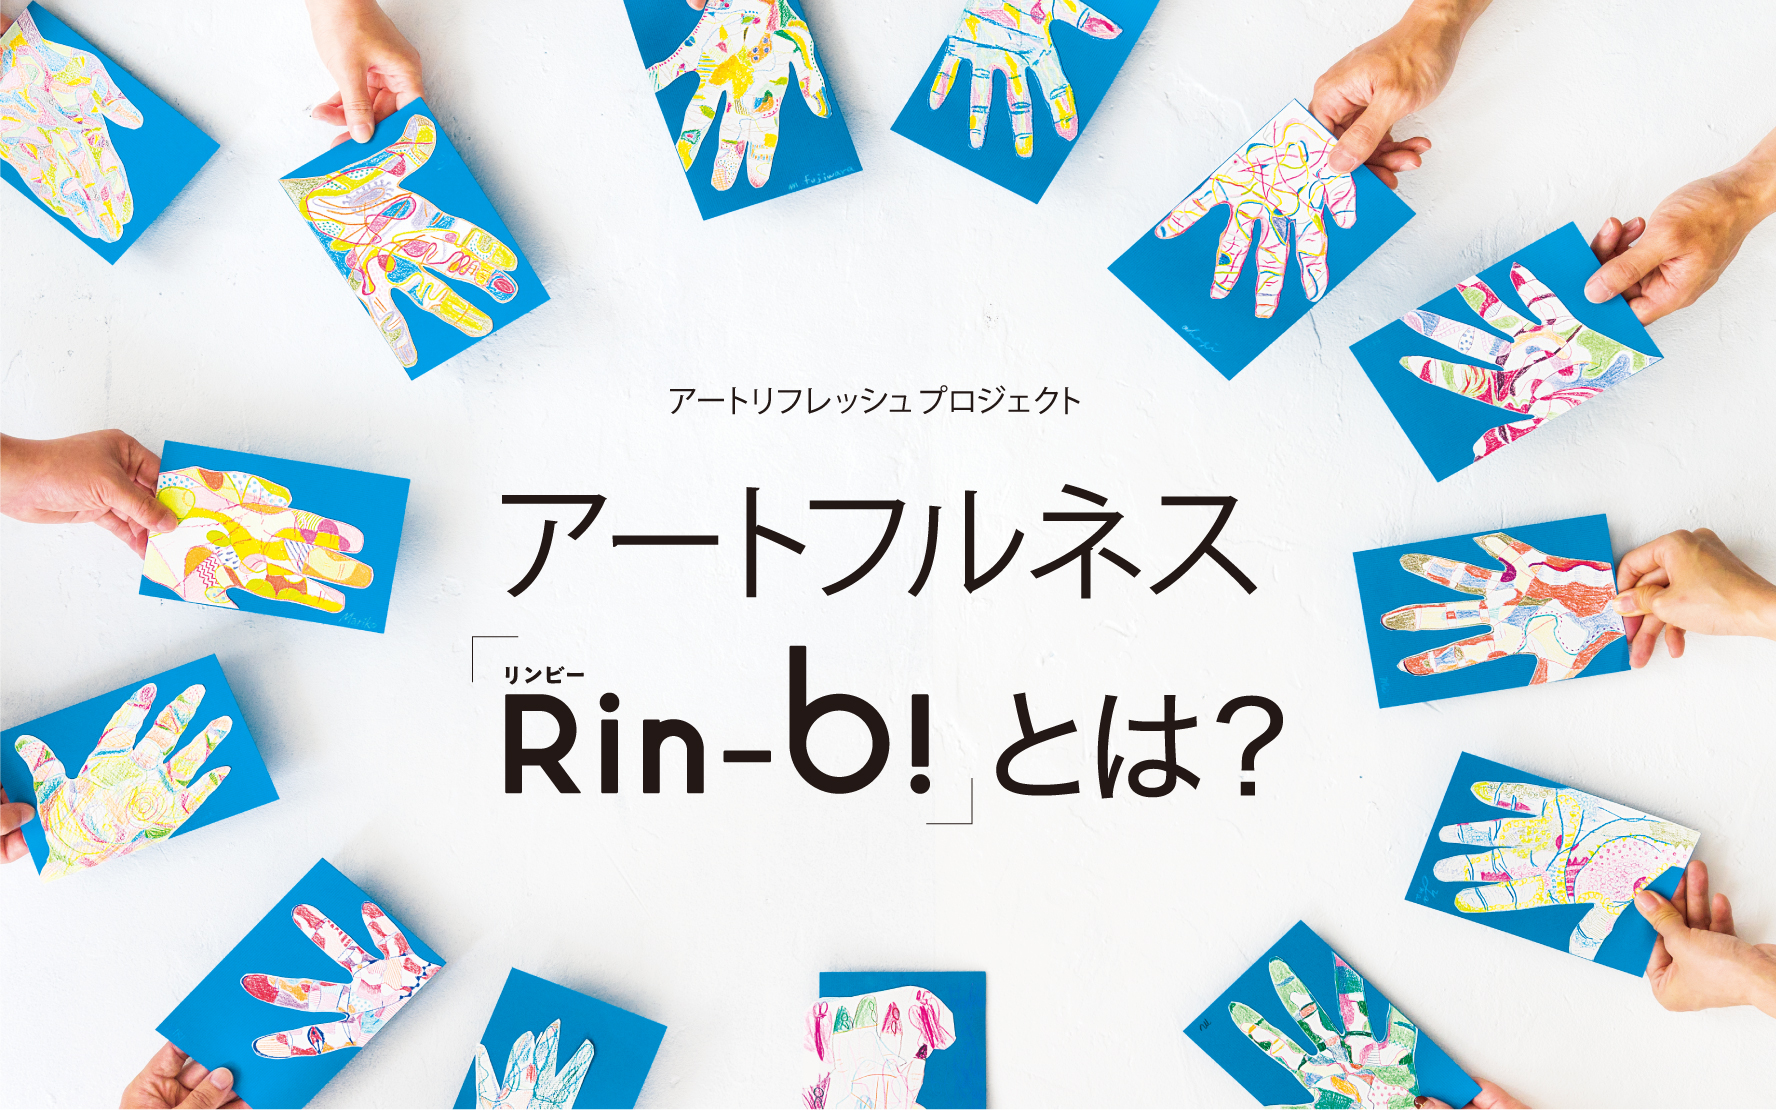 アートフルネス「Rin-b!」とは？